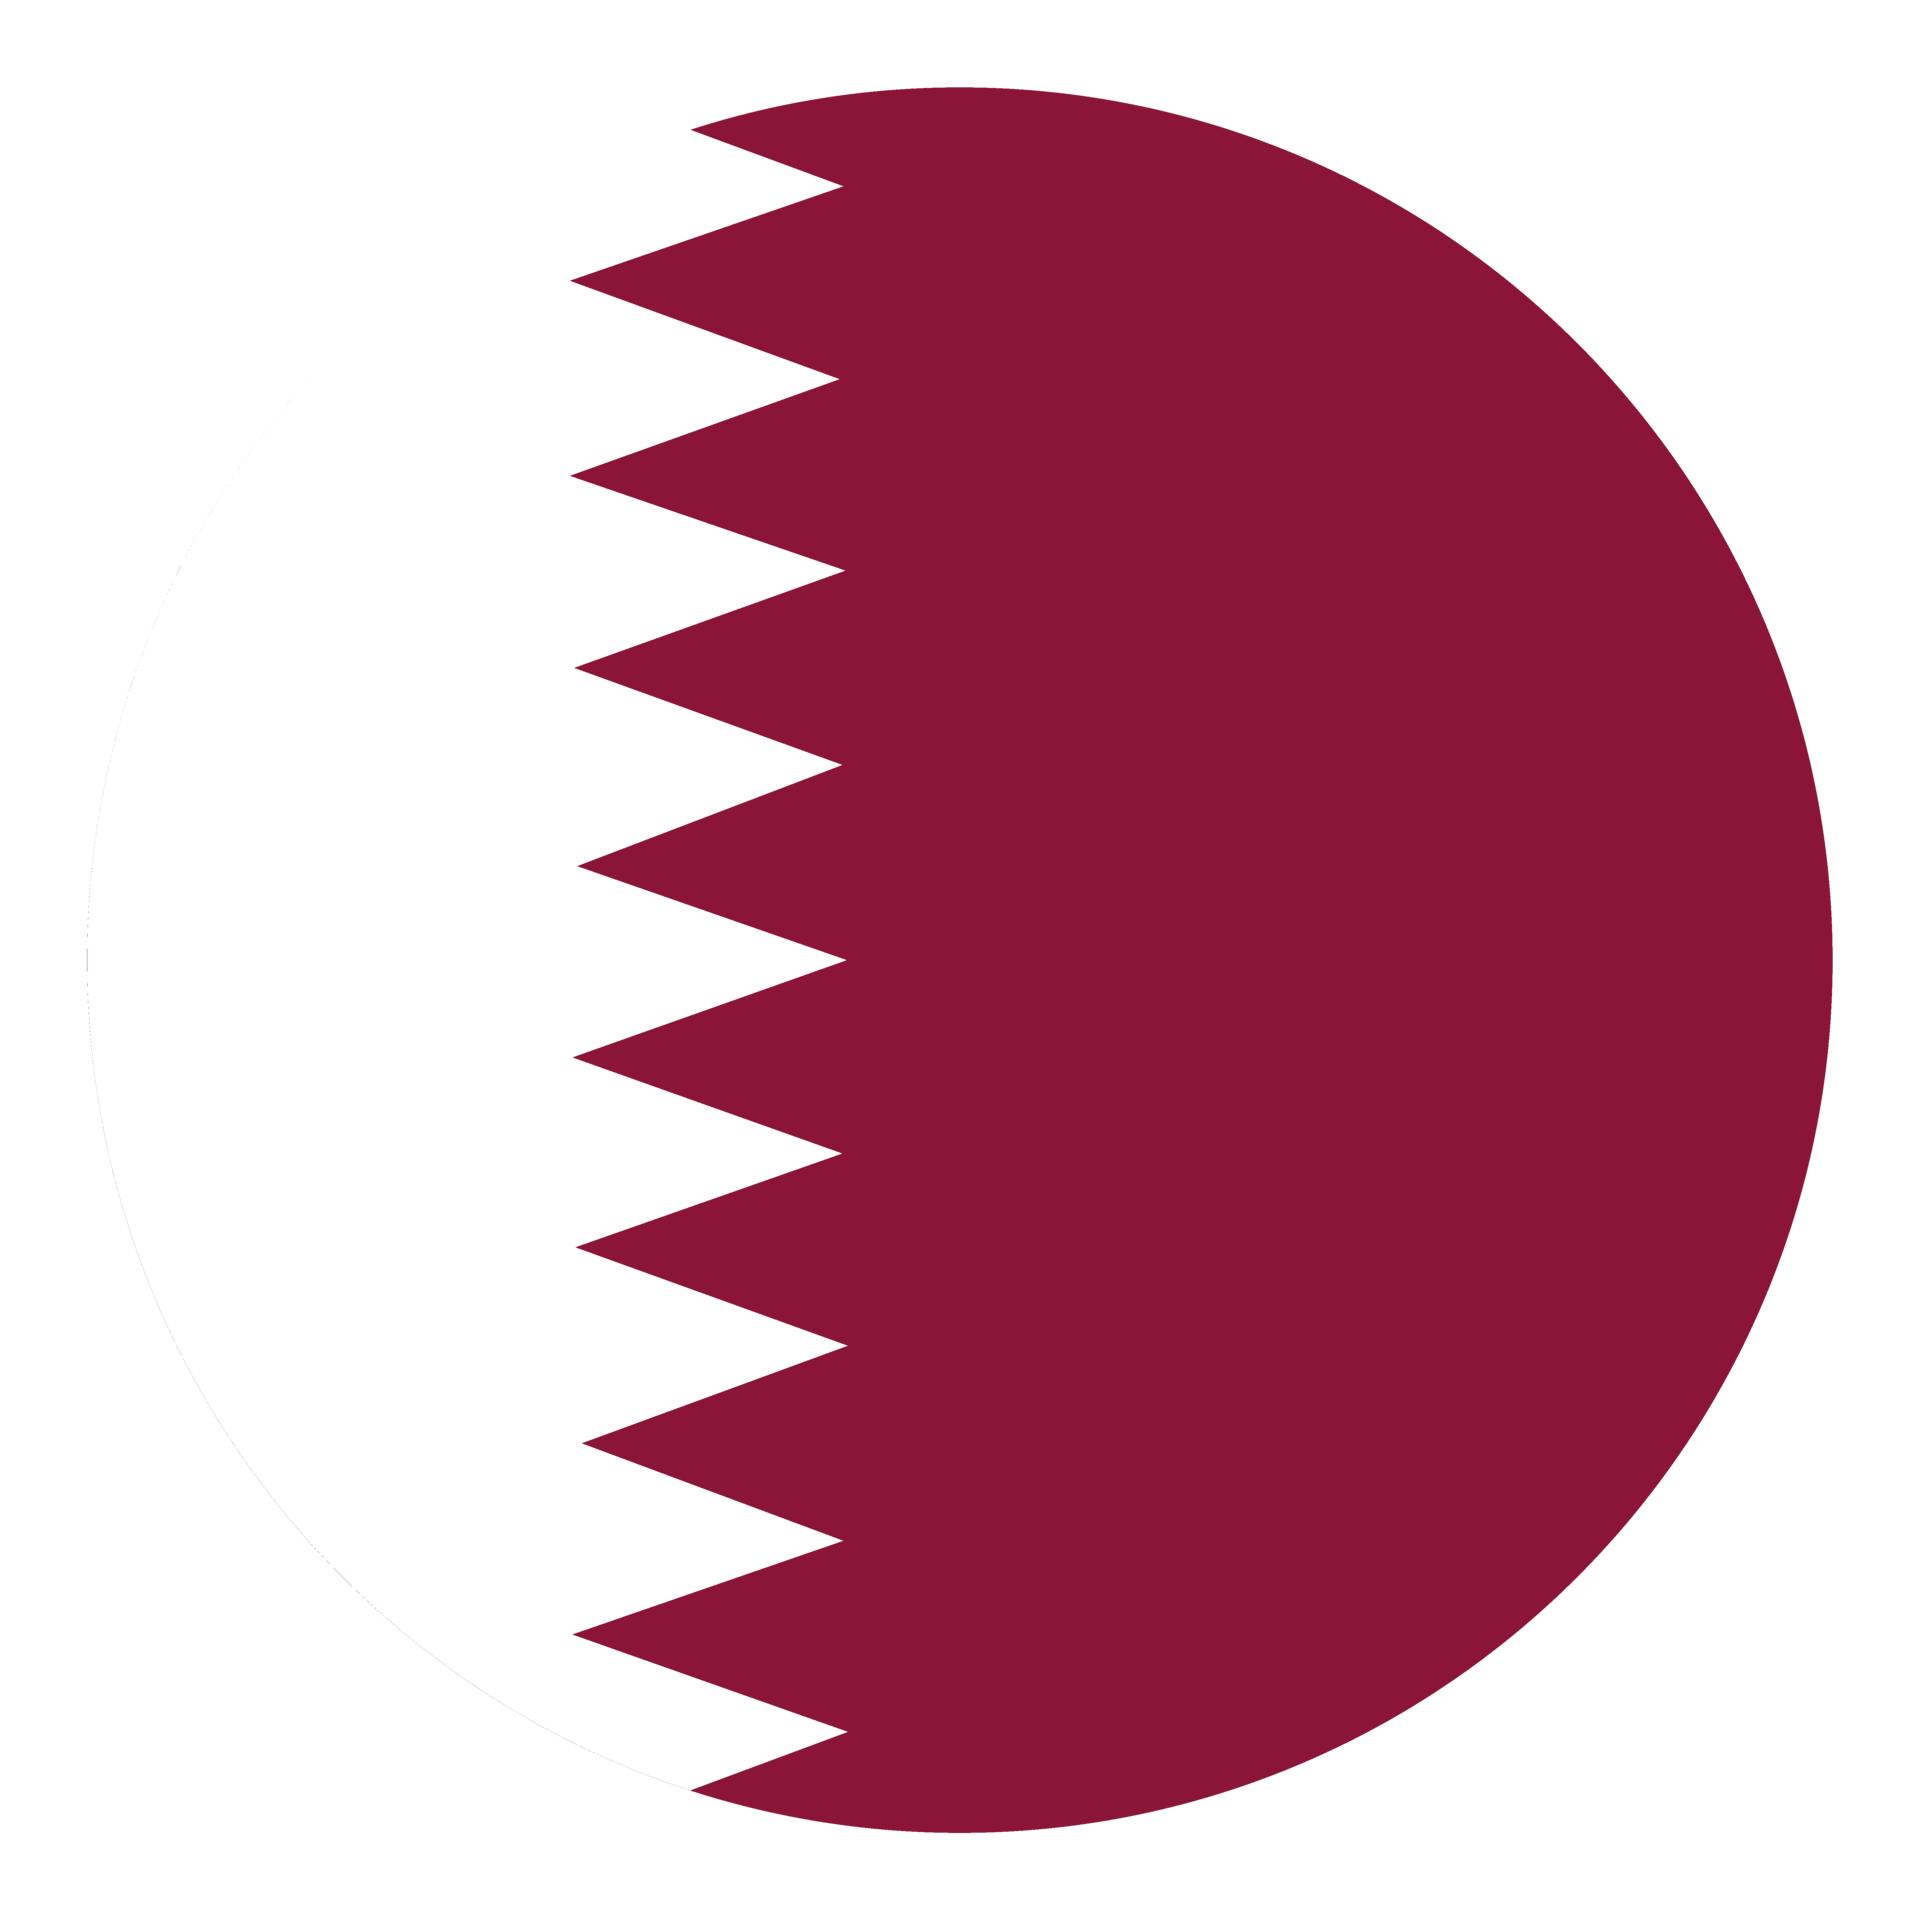 Qatar flag in shape. Flag of Qatar in shape. 25863033 PNG